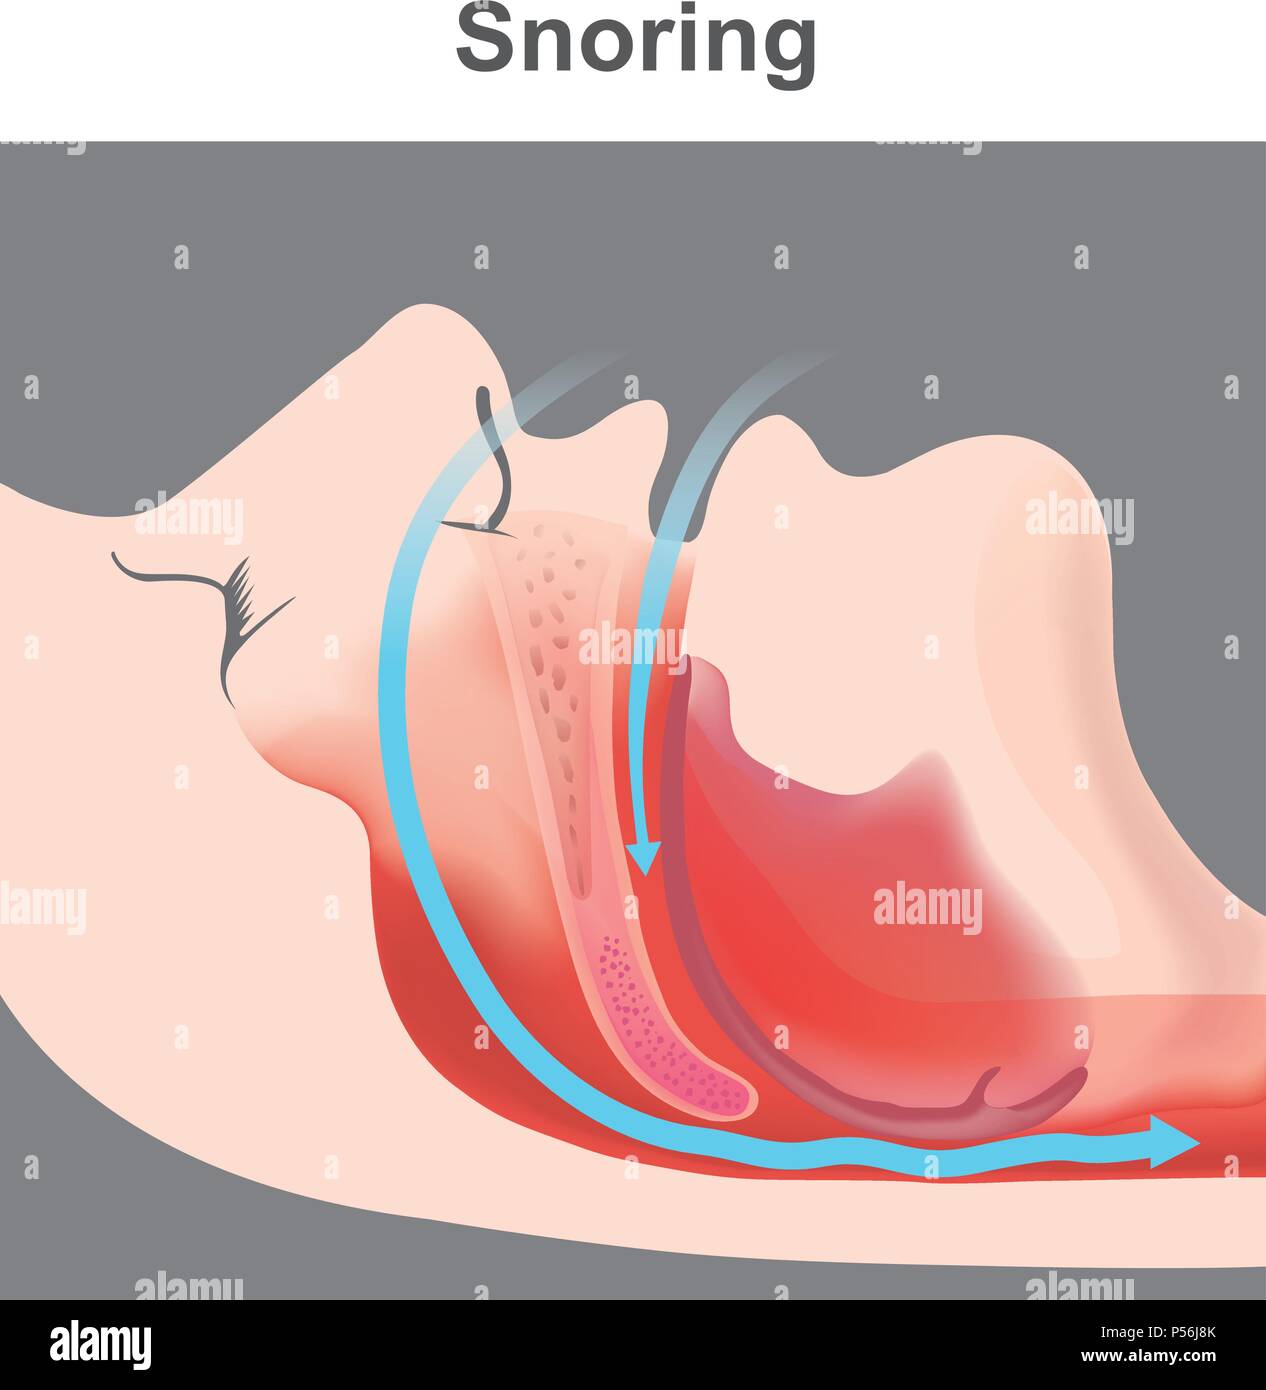 Le ronflement est la vibration de structures respiratoires et le son résultant en raison d'un mouvement d'air obstruées durant la respiration pendant le sommeil. Illustration de Vecteur